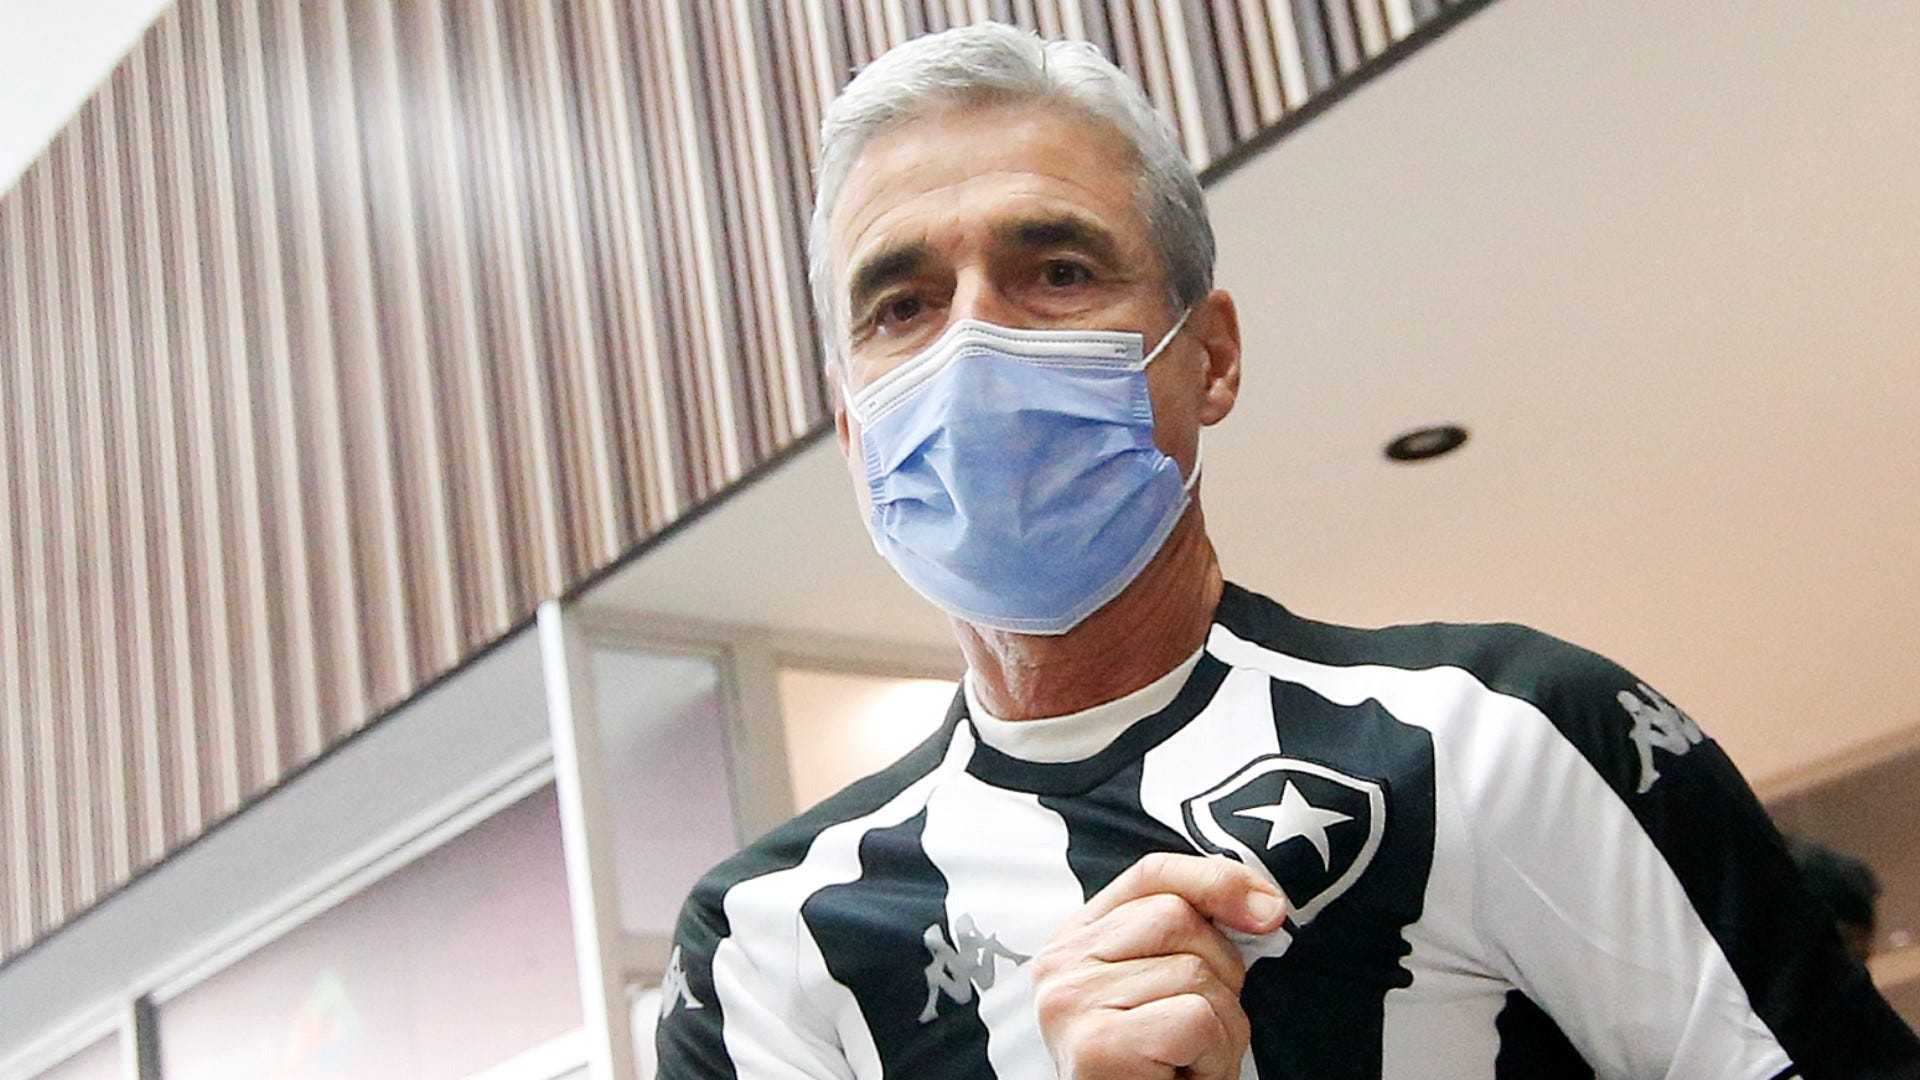 Em 'Acesso Total', diretor do Botafogo revela procura por treinadores  renomados no início da temporada, Botafogo